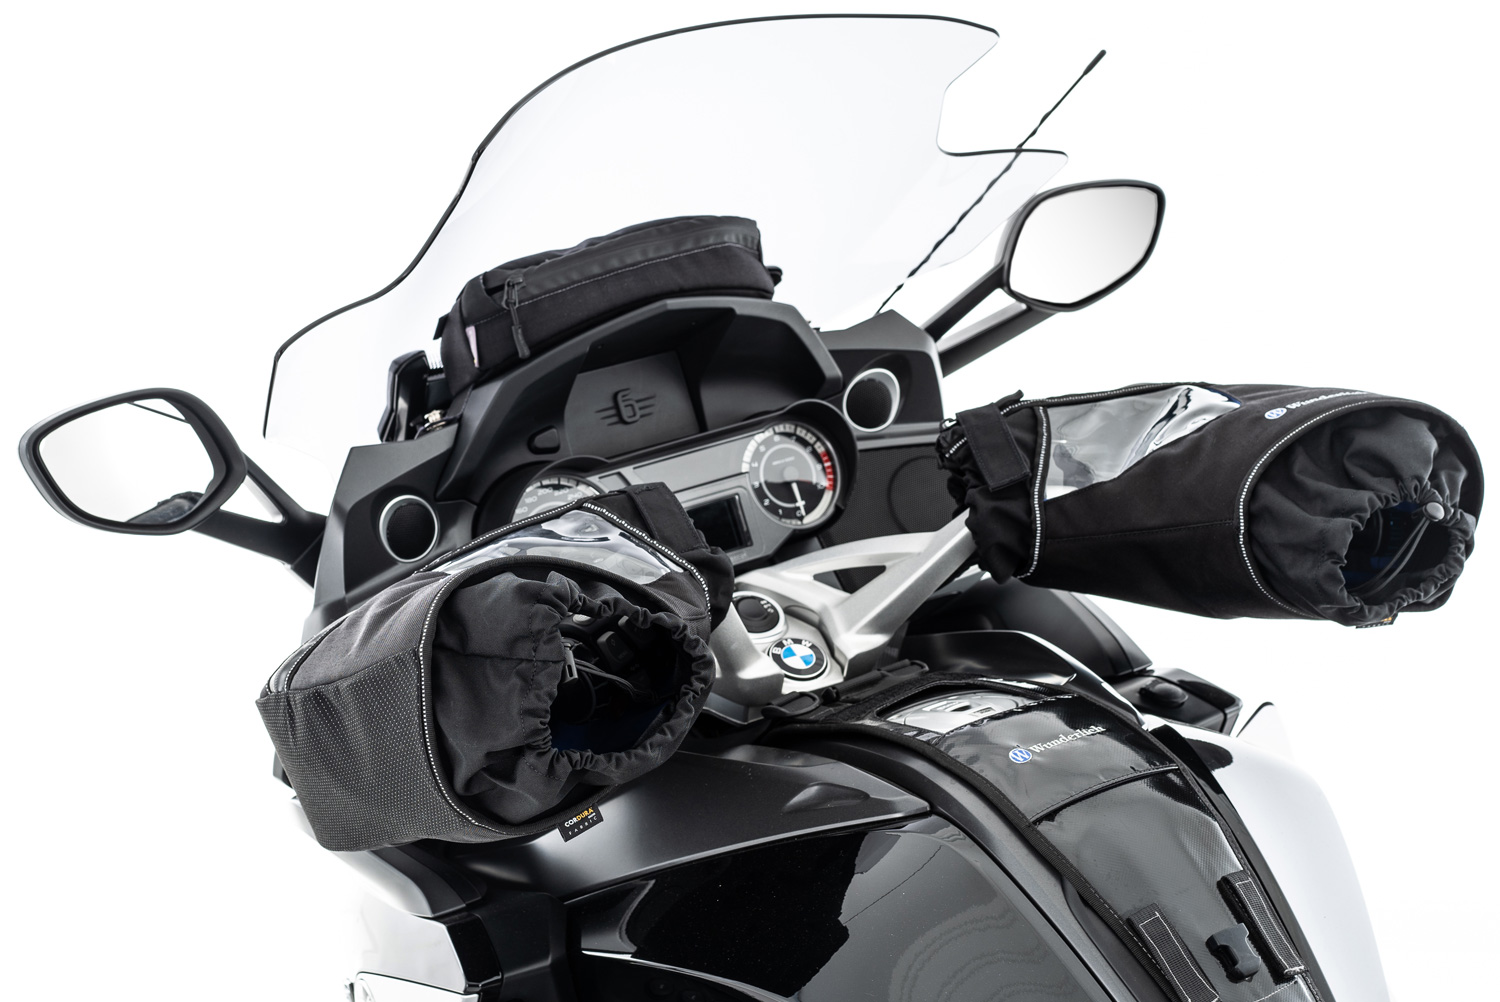 Manchon moto ( étaient montés sur 1200 GS) - Équipement moto